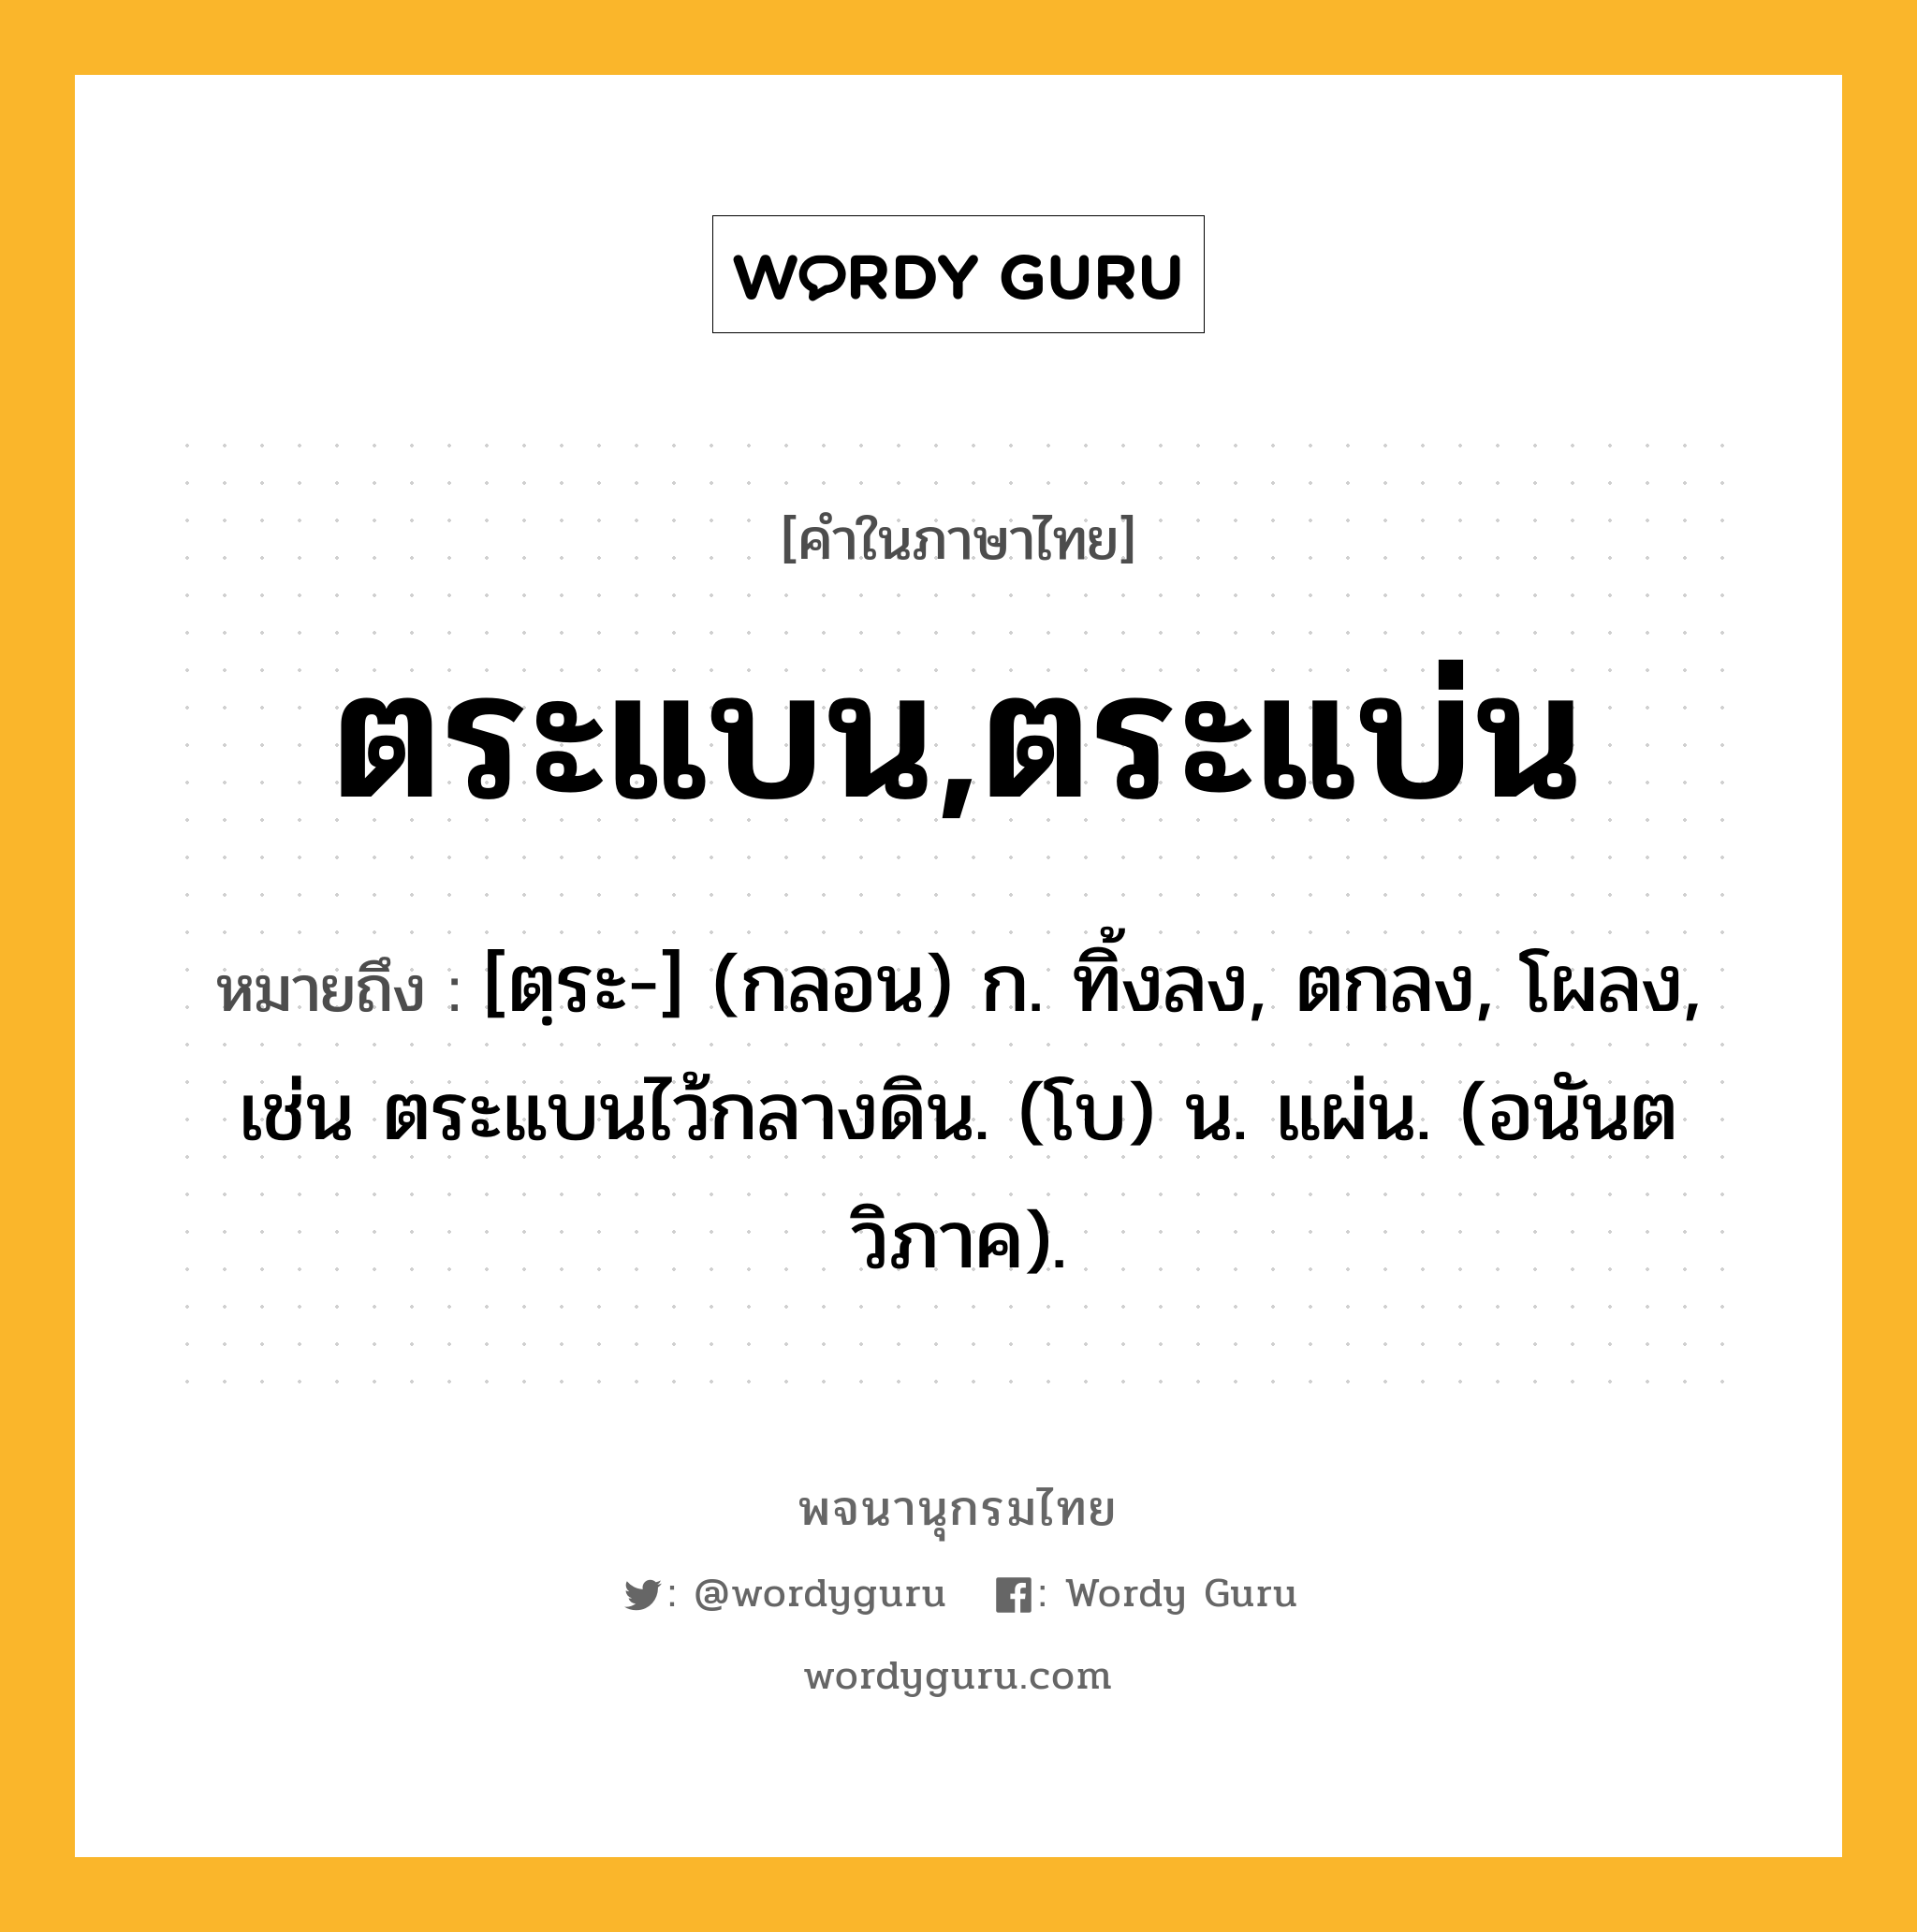 ตระแบน,ตระแบ่น ความหมาย หมายถึงอะไร?, คำในภาษาไทย ตระแบน,ตระแบ่น หมายถึง [ตฺระ-] (กลอน) ก. ทิ้งลง, ตกลง, โผลง, เช่น ตระแบนไว้กลางดิน. (โบ) น. แผ่น. (อนันตวิภาค).